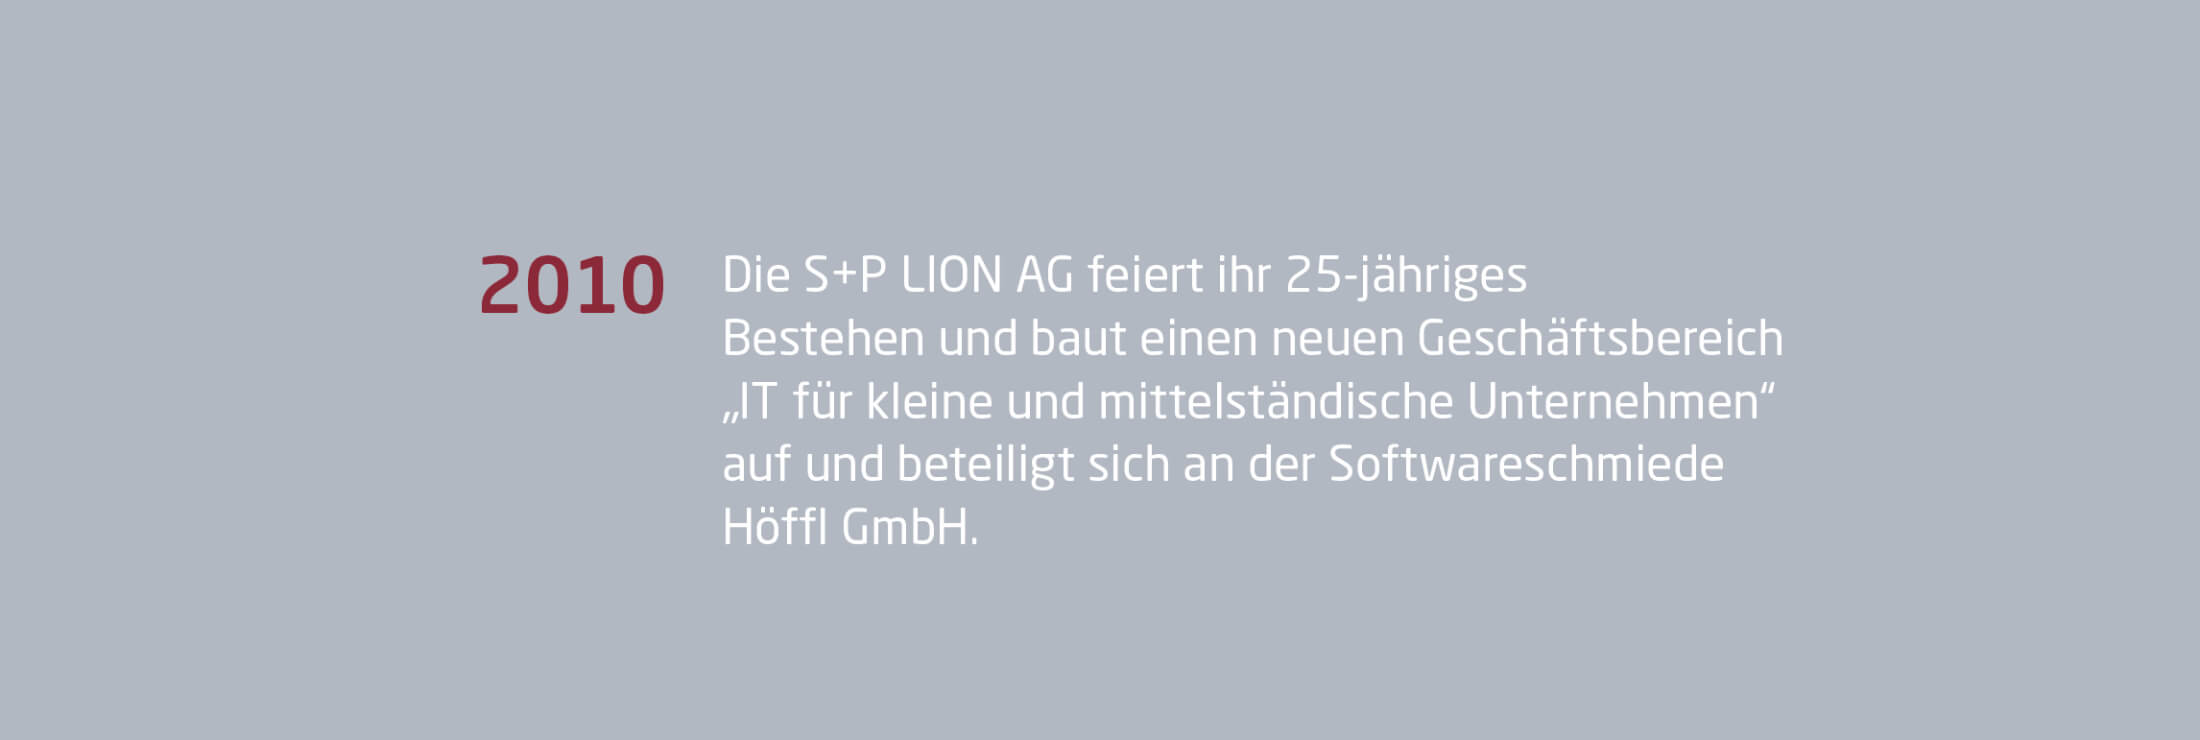 Jahr 2010: Historie S+P LION AG